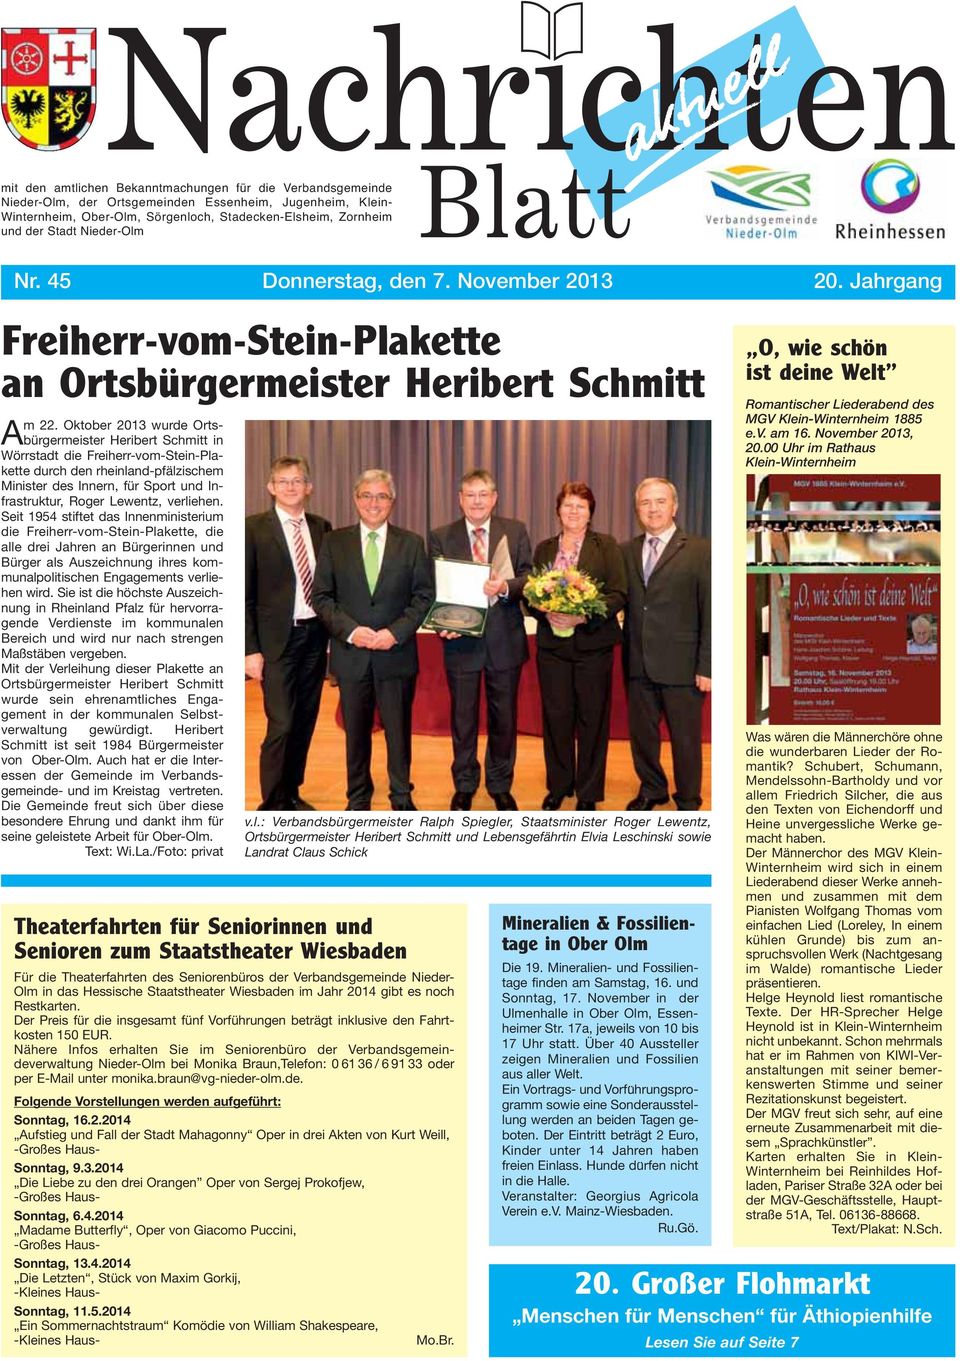 Oktober 2013 wurde Ortsbürgermeister Heribert Schmitt in Wörrstadt die Freiherr-vom-Stein-Plakette durch den rheinland-pfälzischem Minister des Innern, für Sport und Infrastruktur, Roger Lewentz,